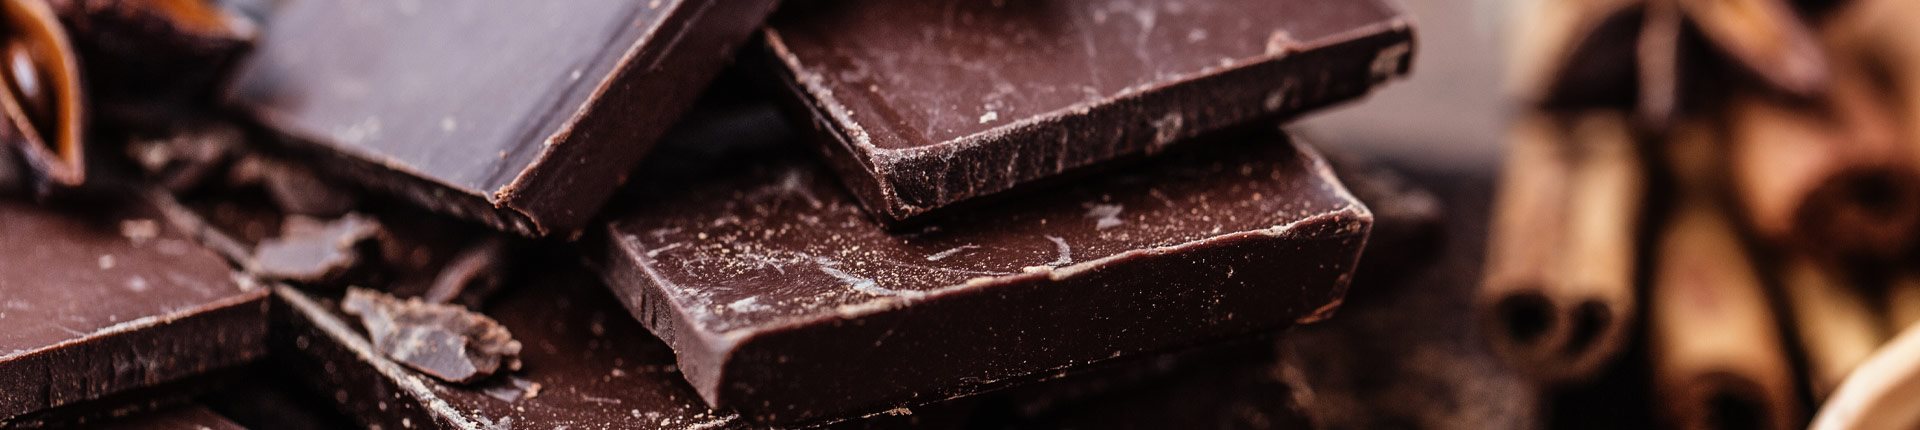 Co cennego dla zdrowia znajduje się w ciemnej czekoladzie?